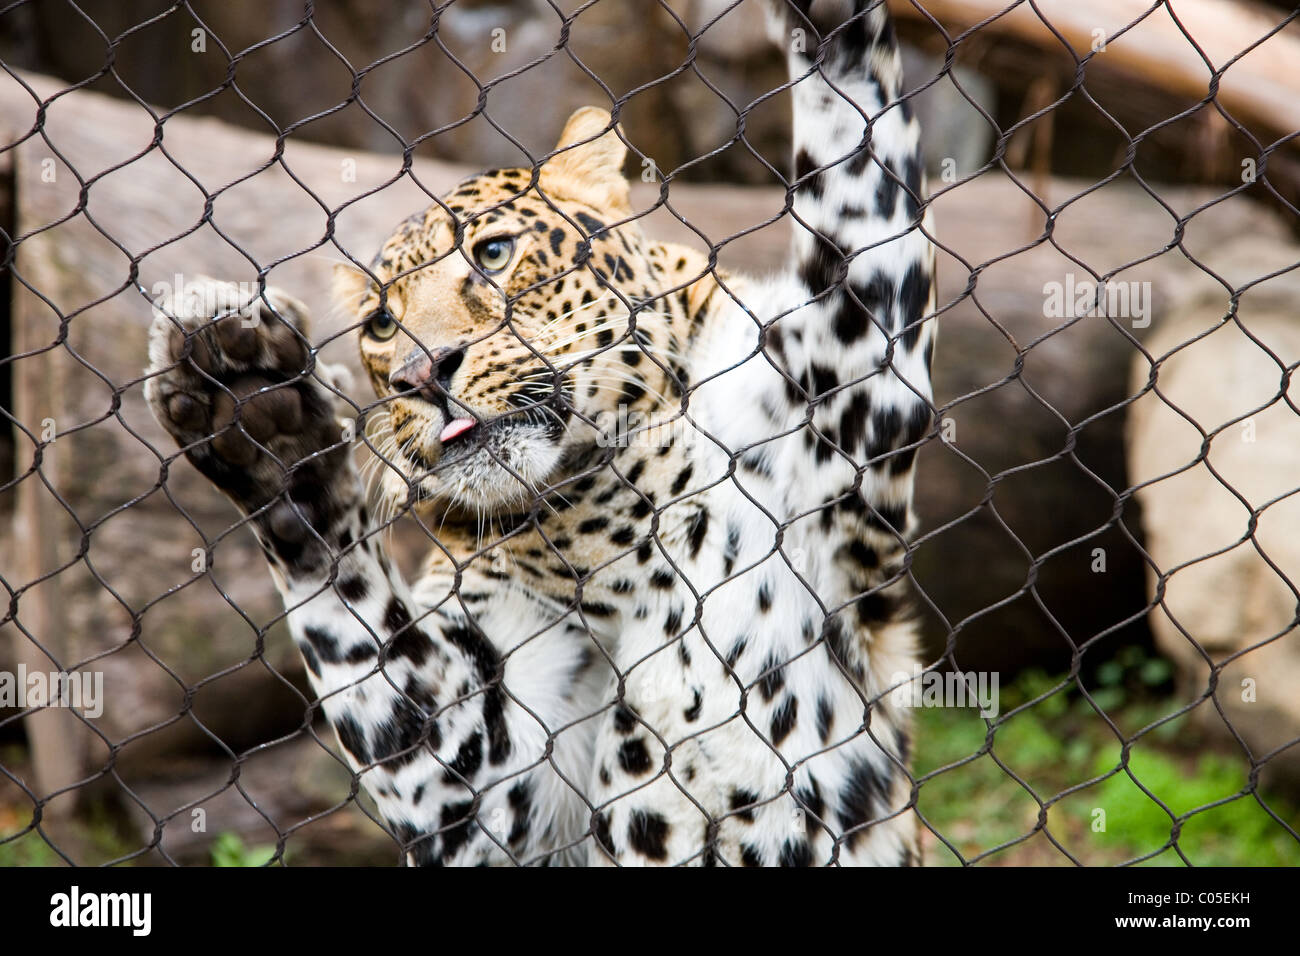 Leopard in captivity at Houston Zoo, Texas Stock Photo